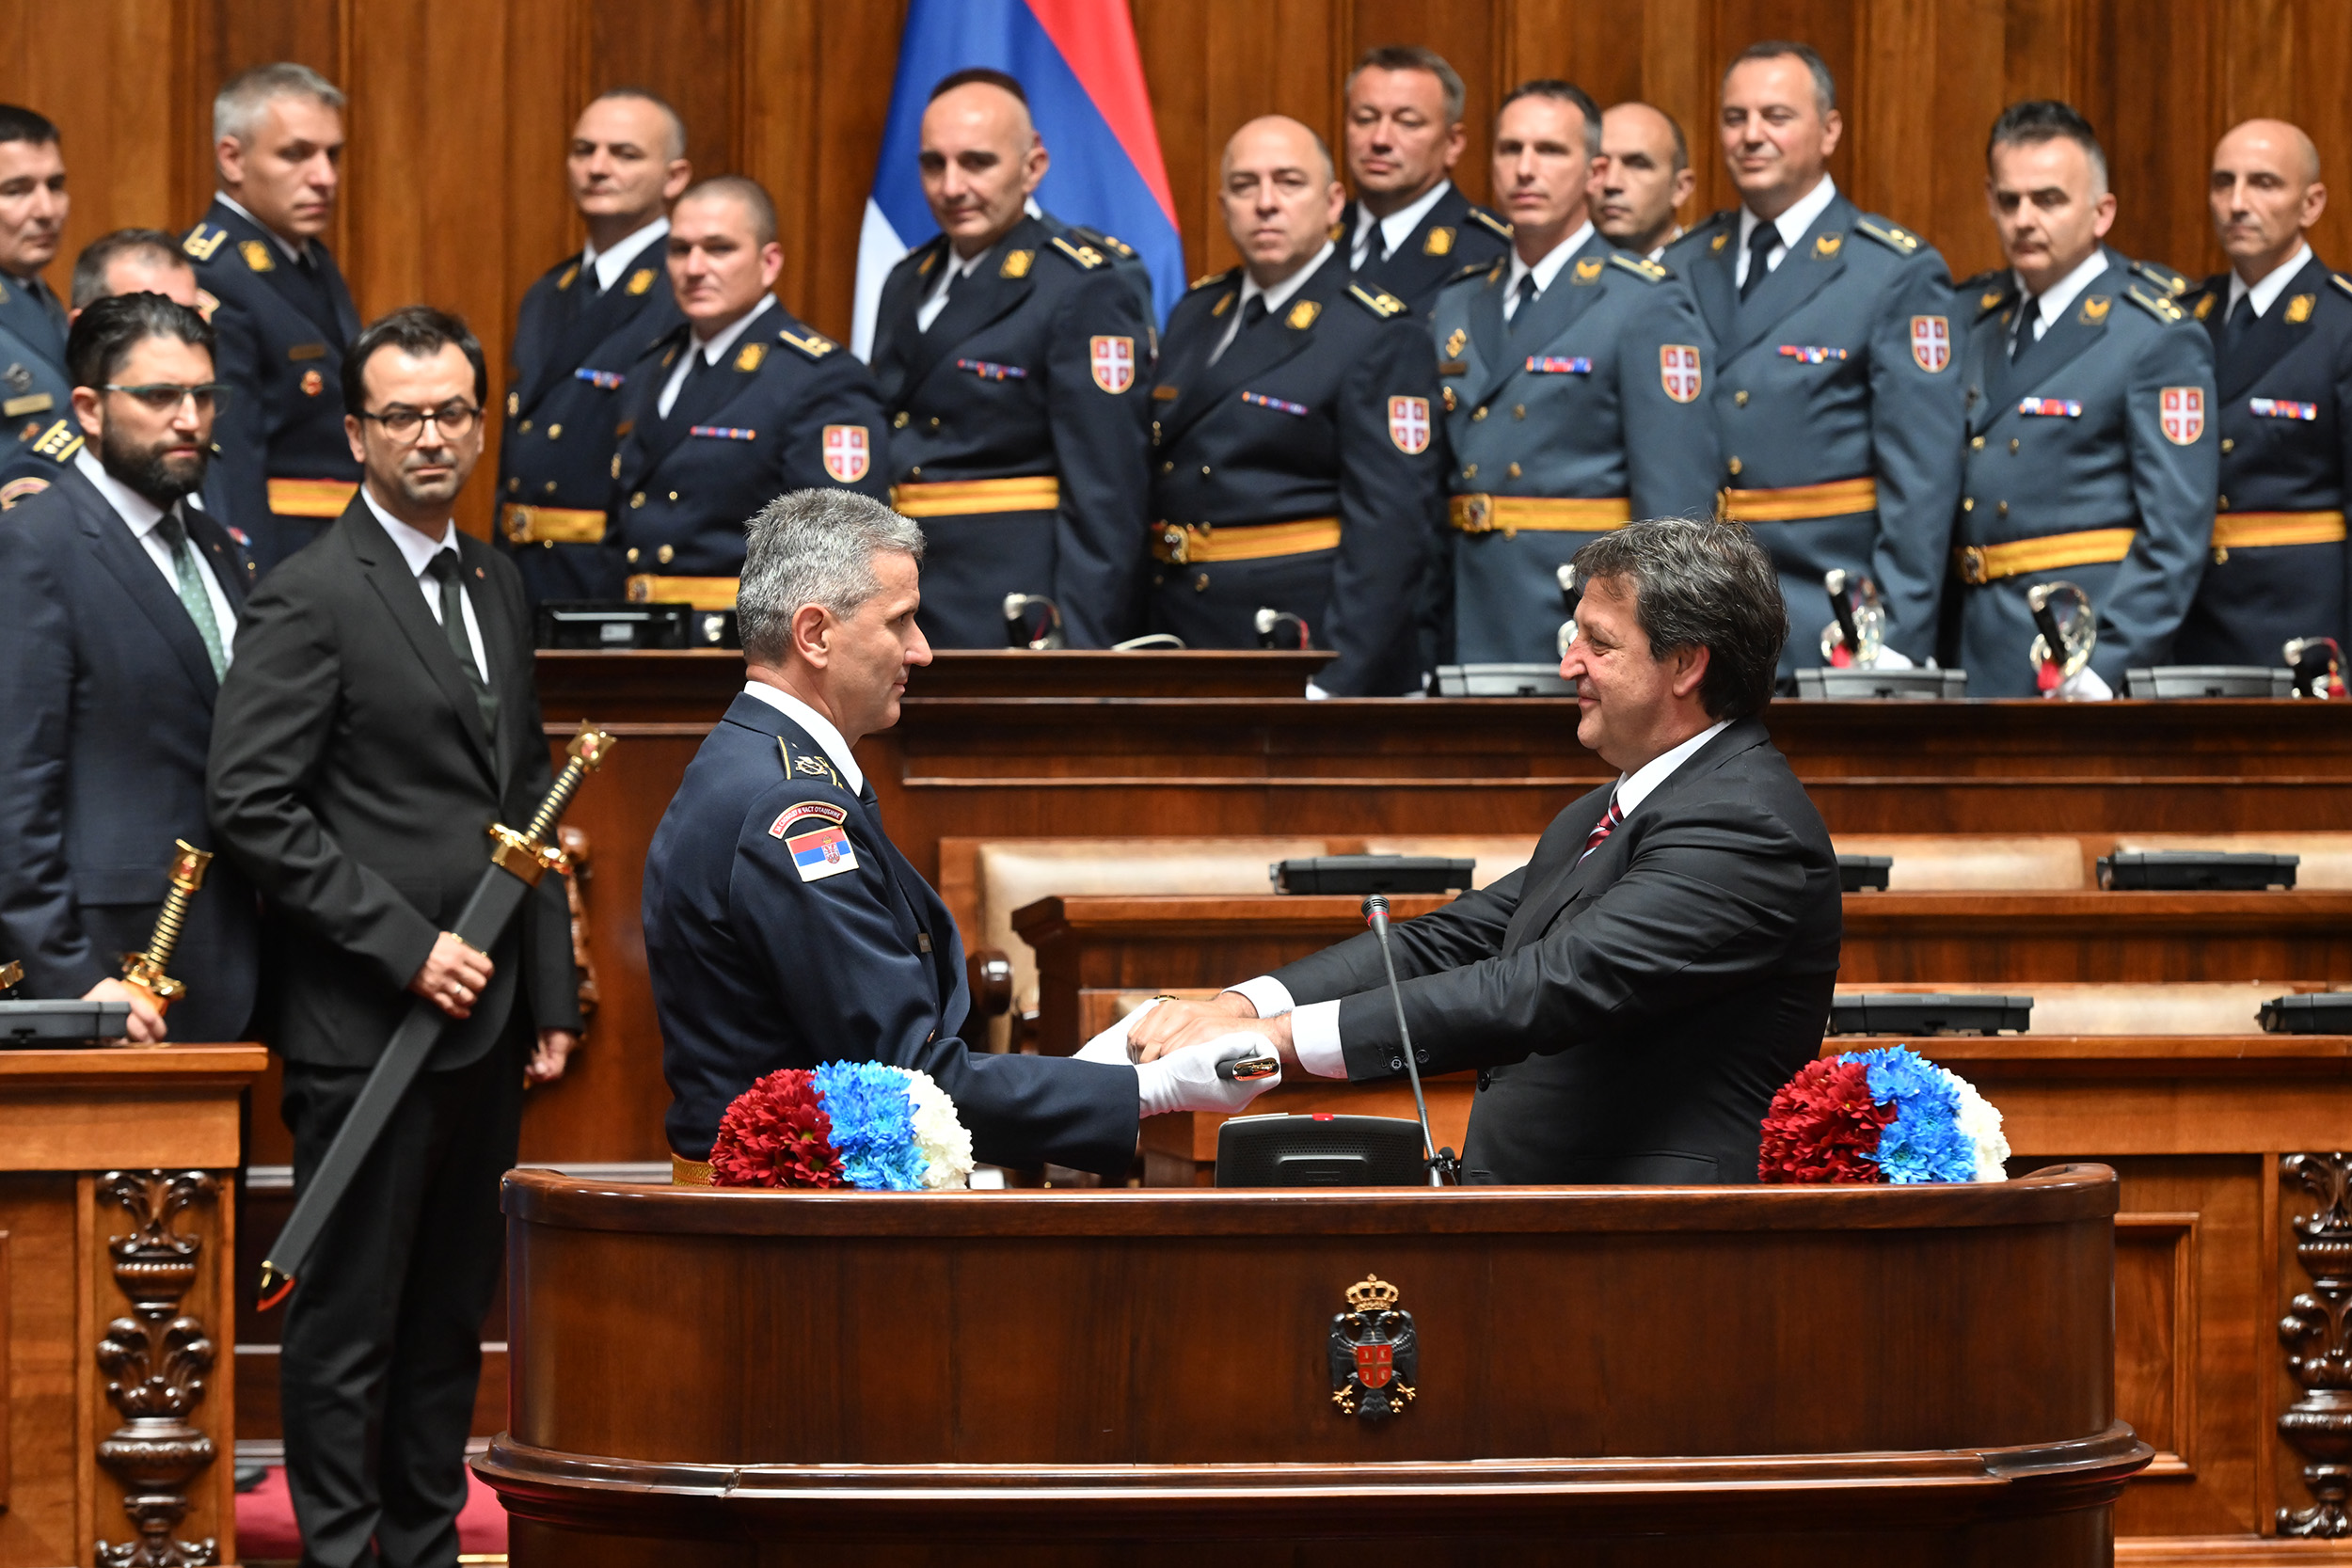 Јединство државе, војске и народа главни фактор стабилности Србије